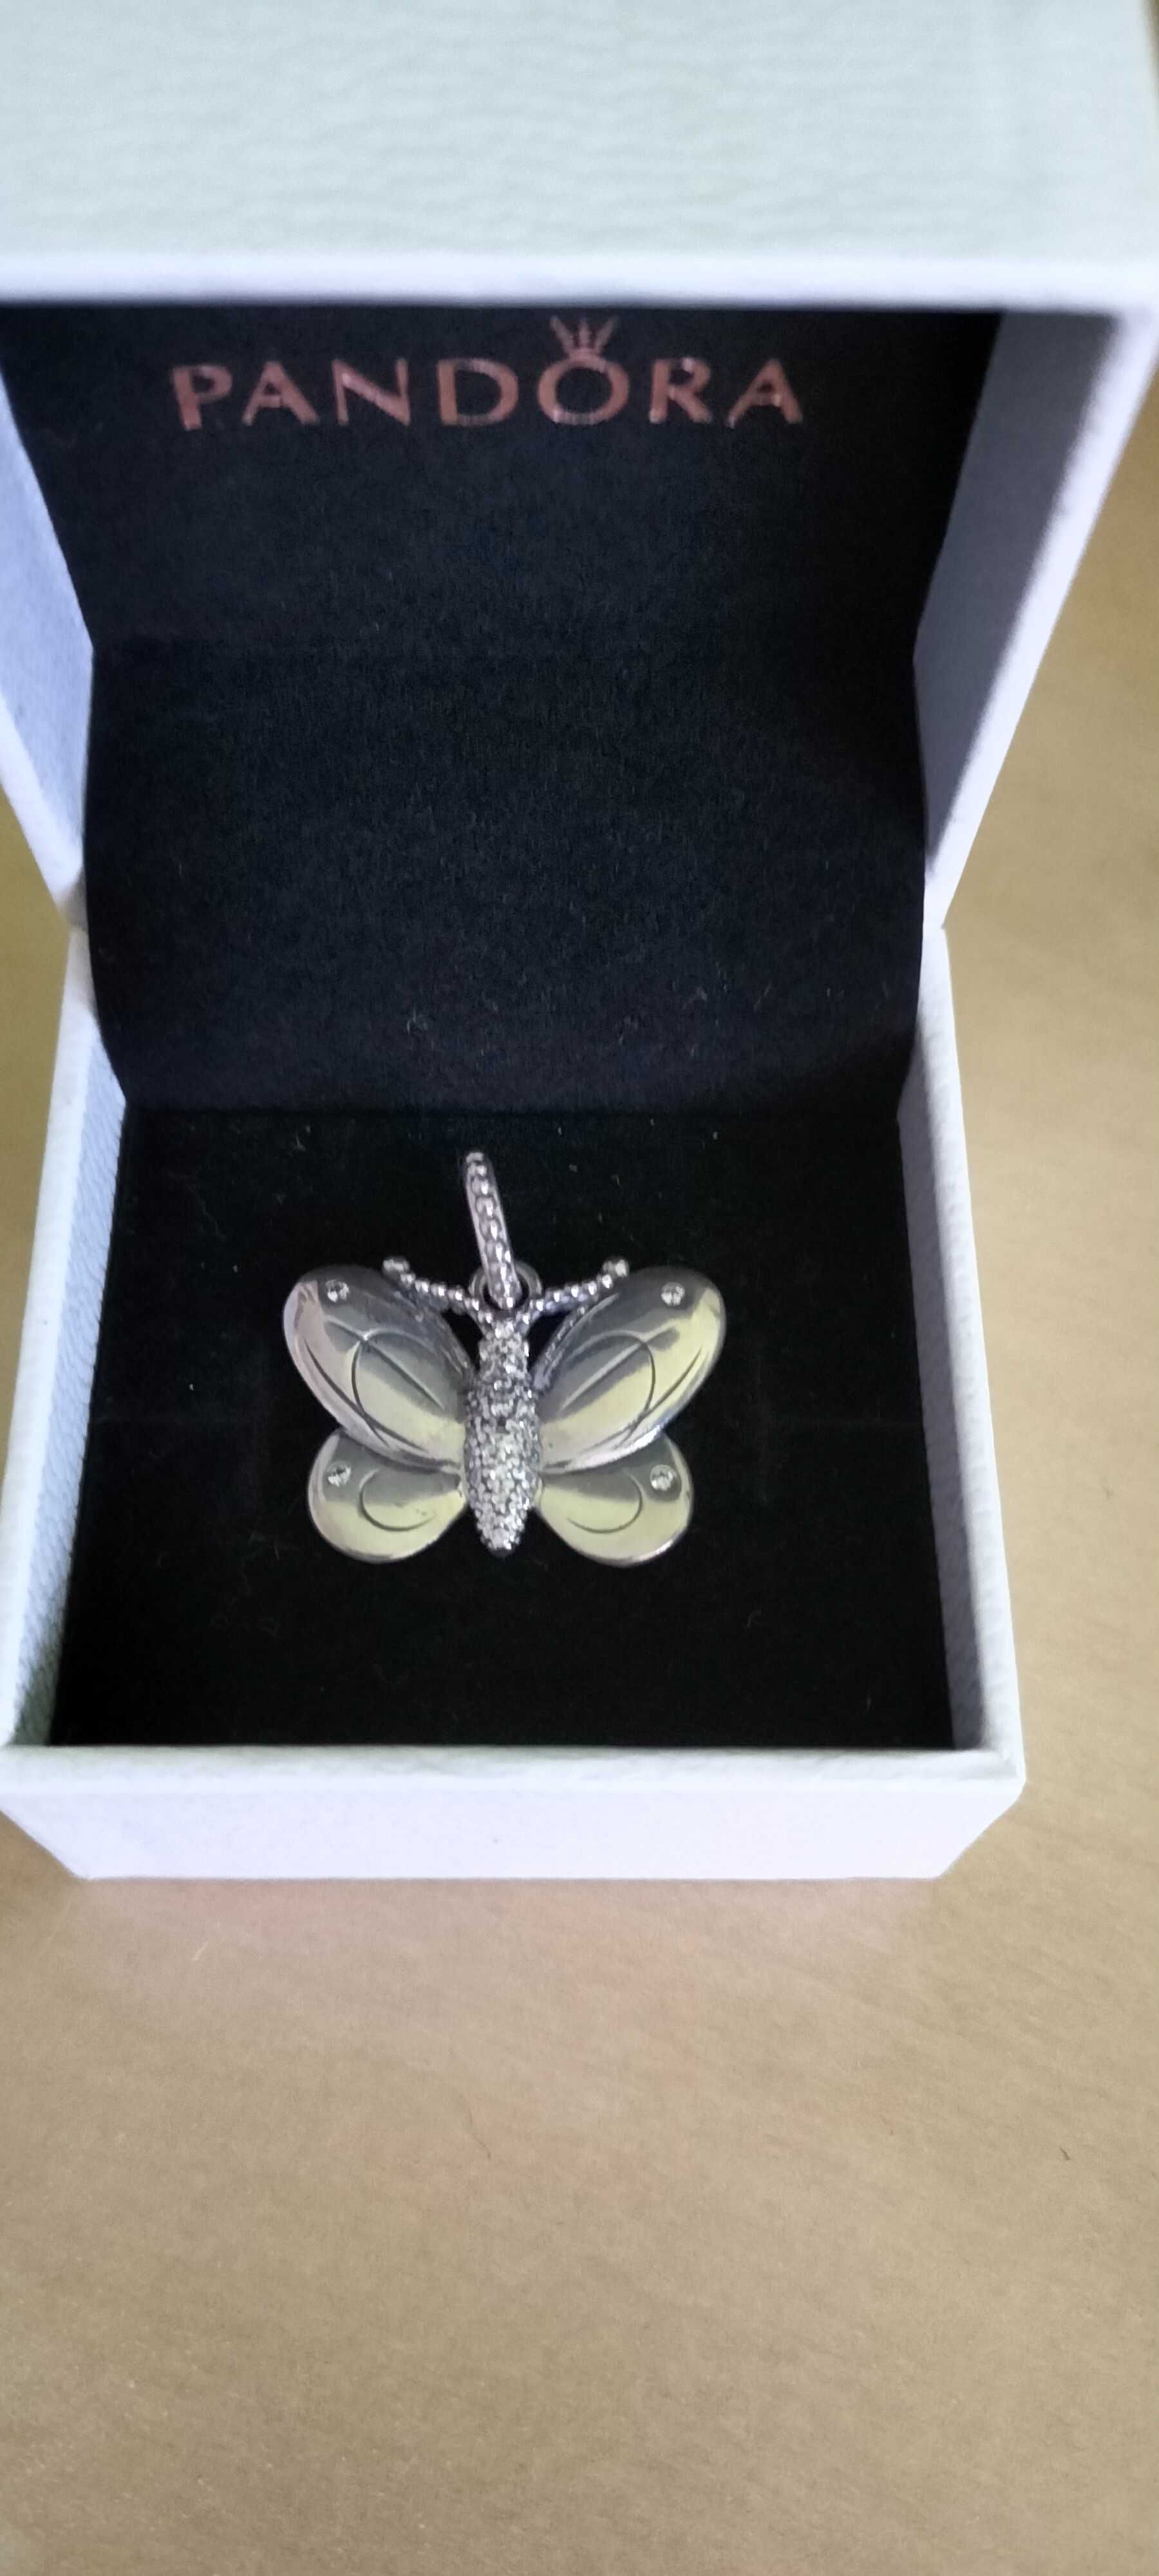 PANDORA - Pandantiv din argint in forma de fluture